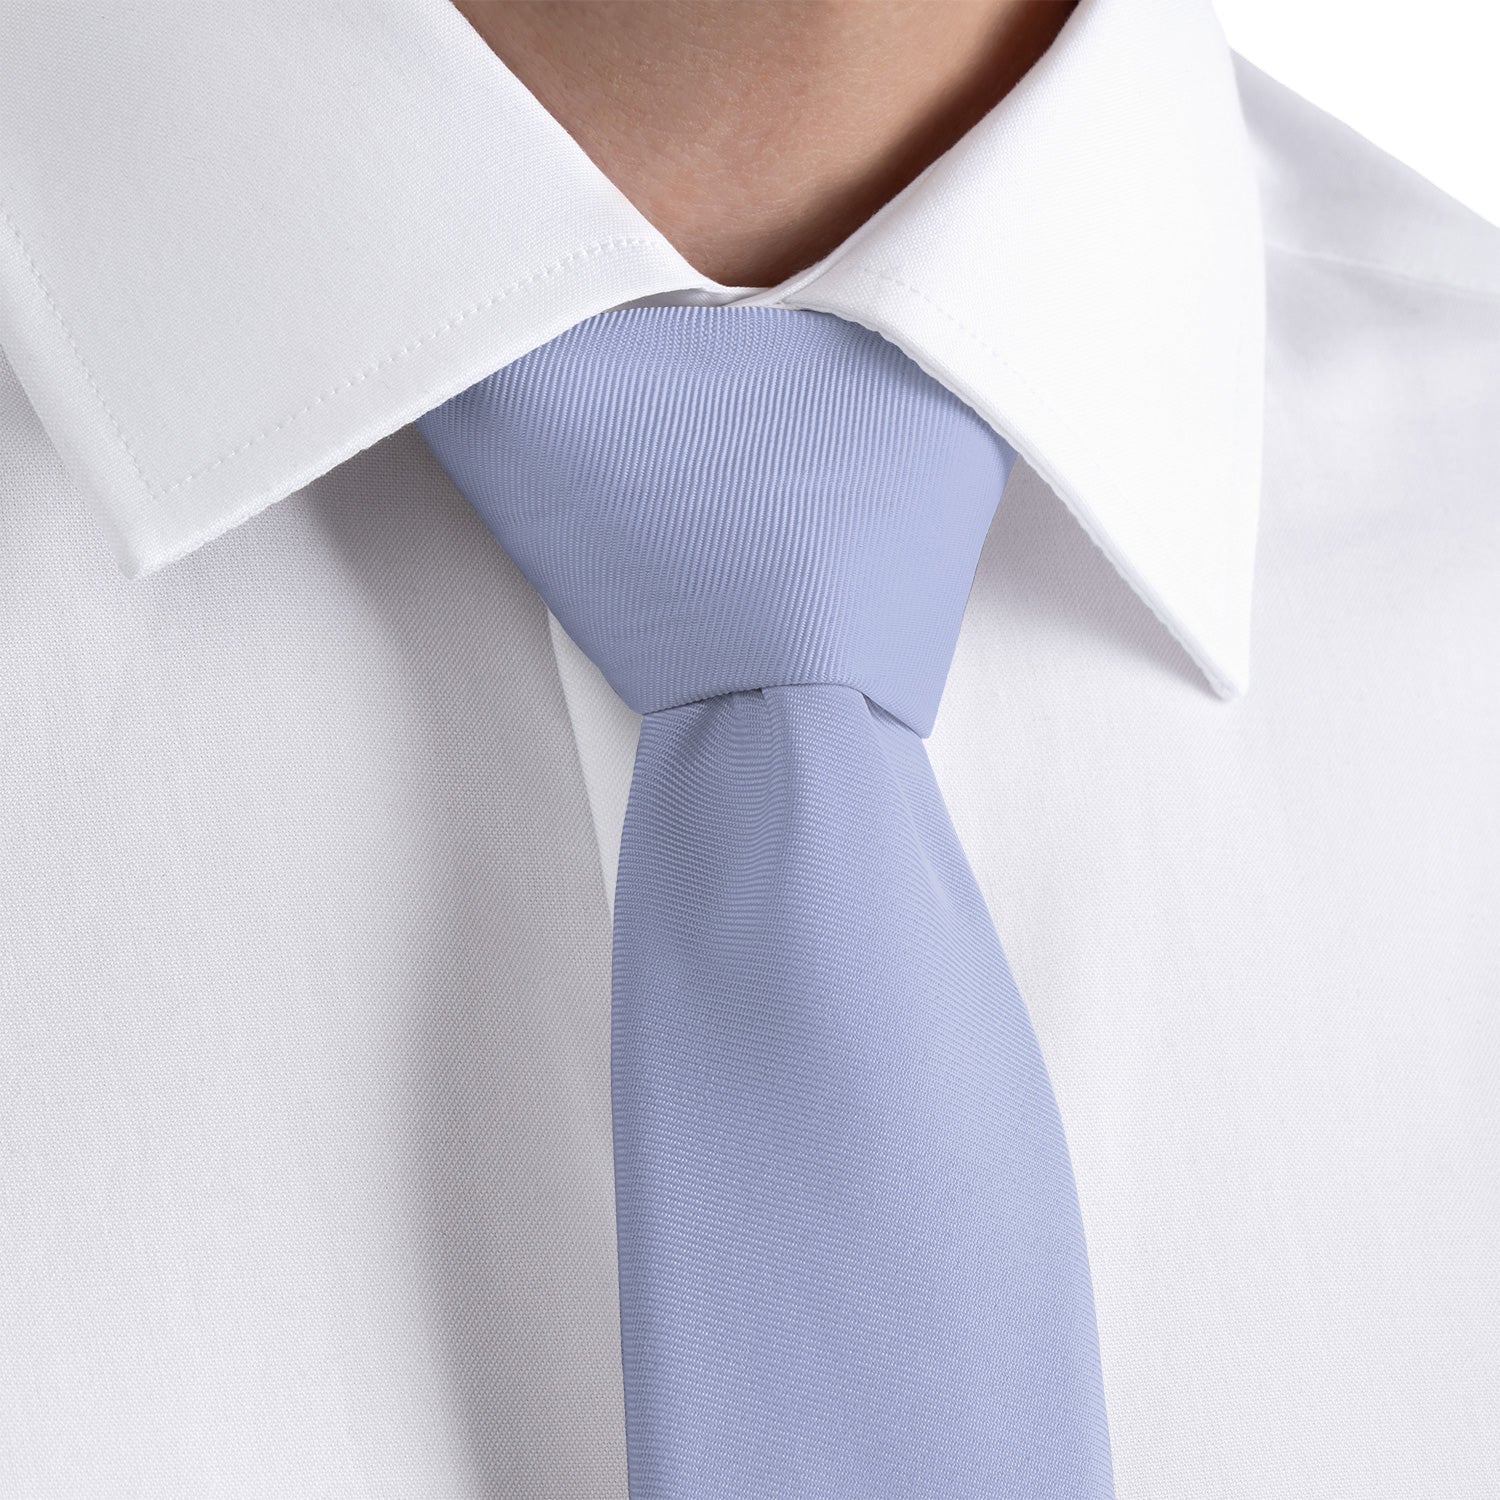 Azazie Lavender Necktie - Rolled - Knotty Tie Co.